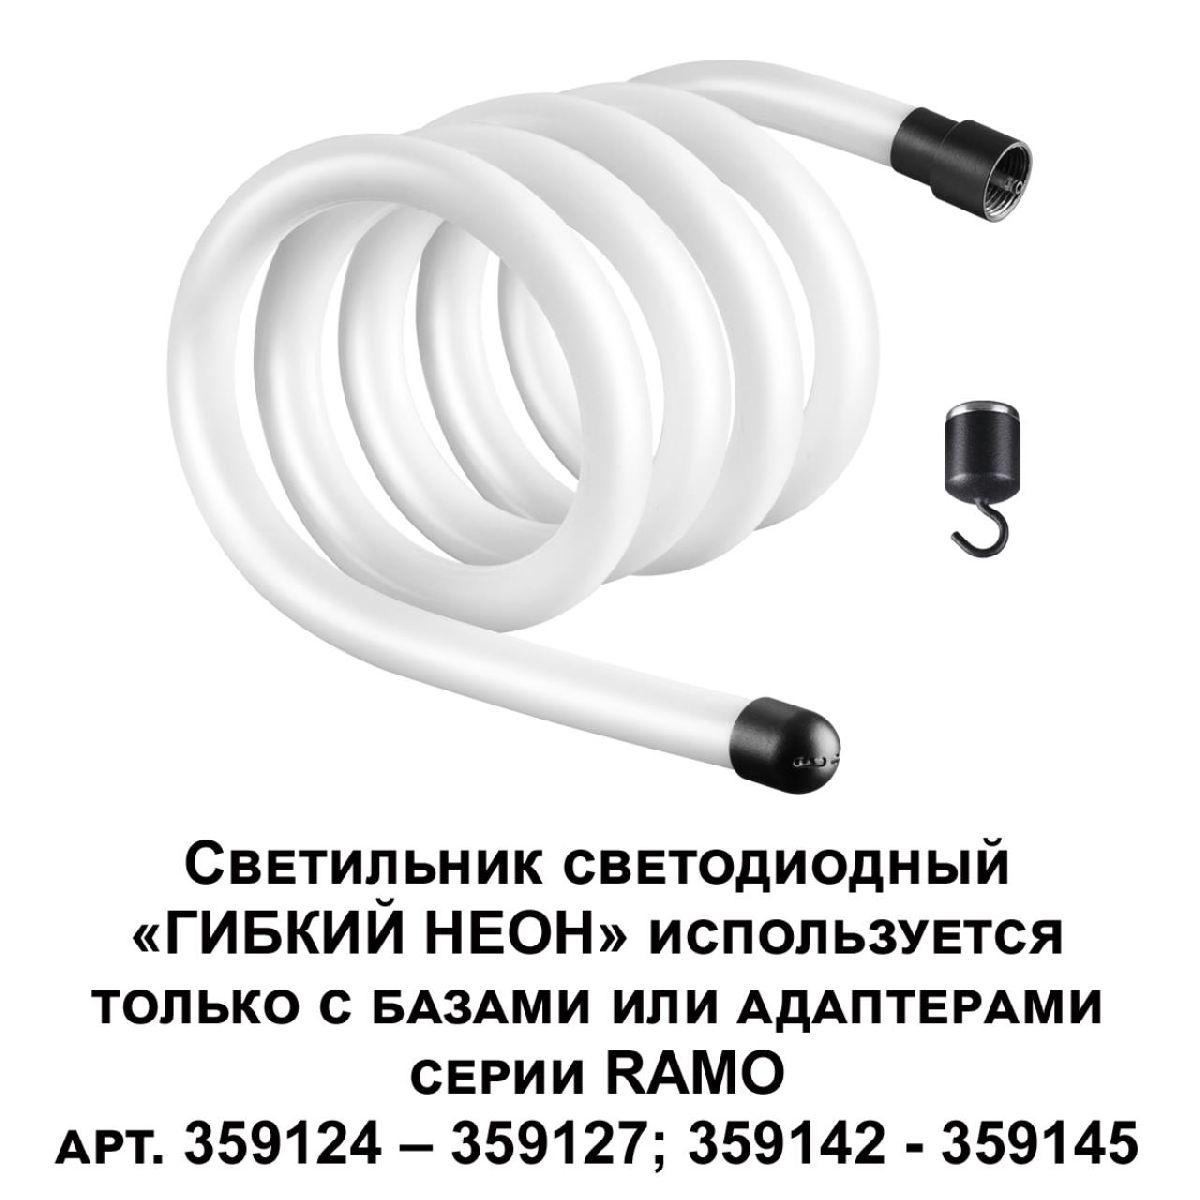 Светодиодный гибкий неон Novotech Ramo 170-265В 25Вт 4000K 2м IP20 359131